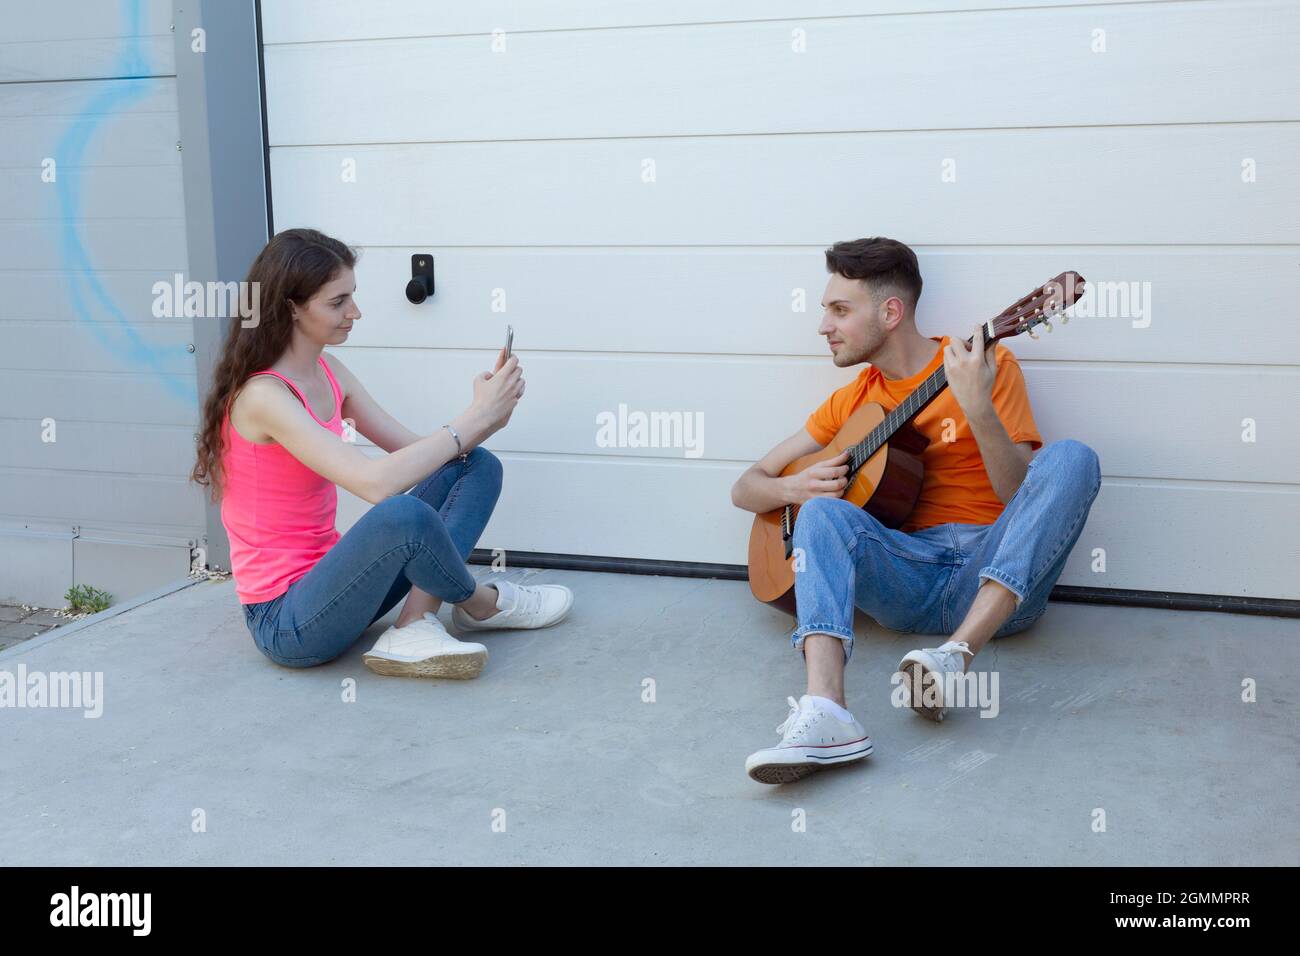 Jeune femme photographiant un petit ami jouant de la guitare dans l'allée Banque D'Images